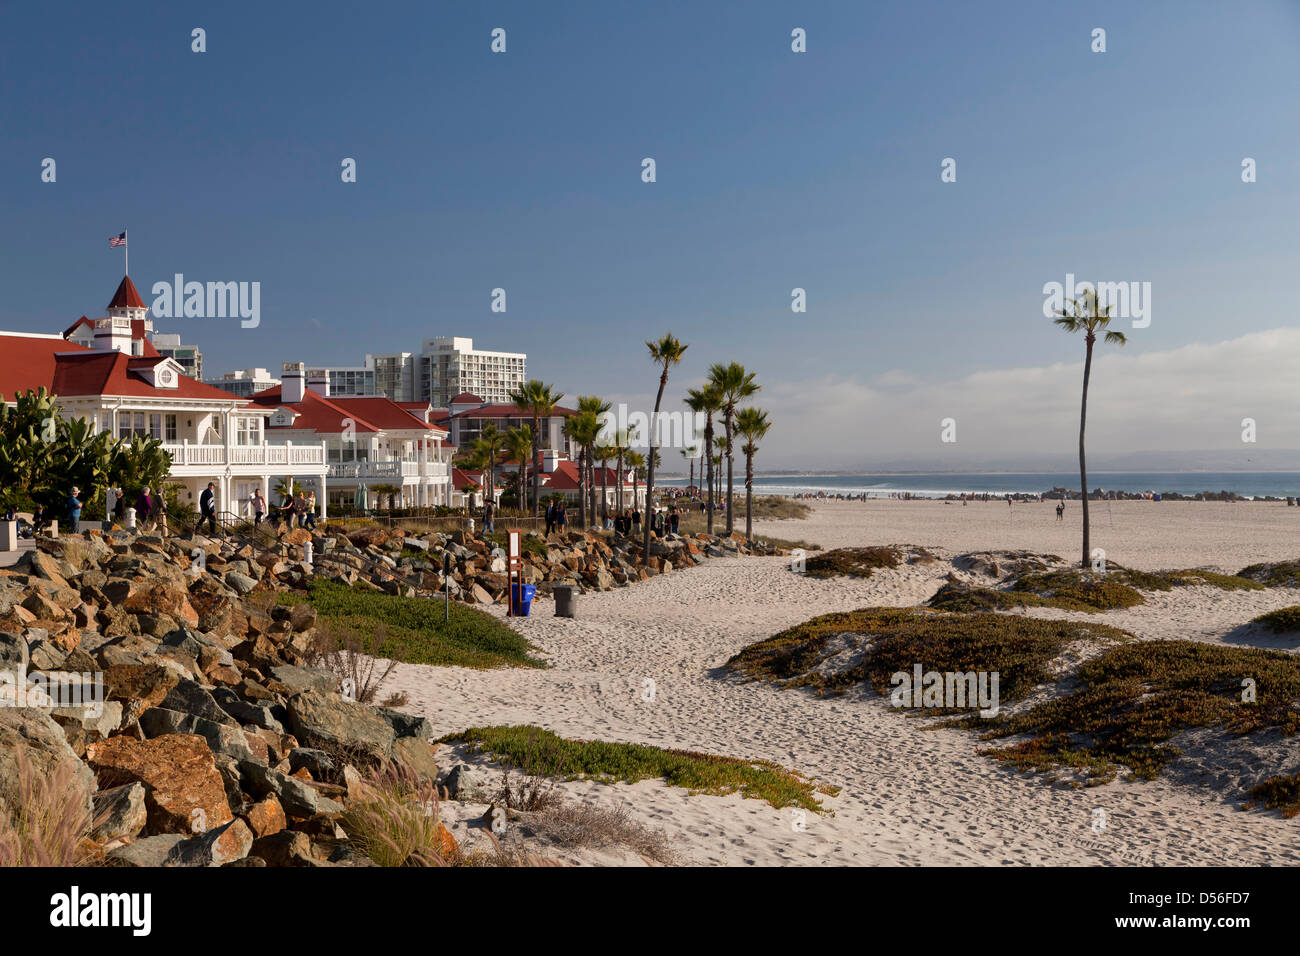 Hotel del Coronado am Strand auf Coronado Island, San Diego, Kalifornien, Vereinigte Staaten von Amerika, USA Stockfoto